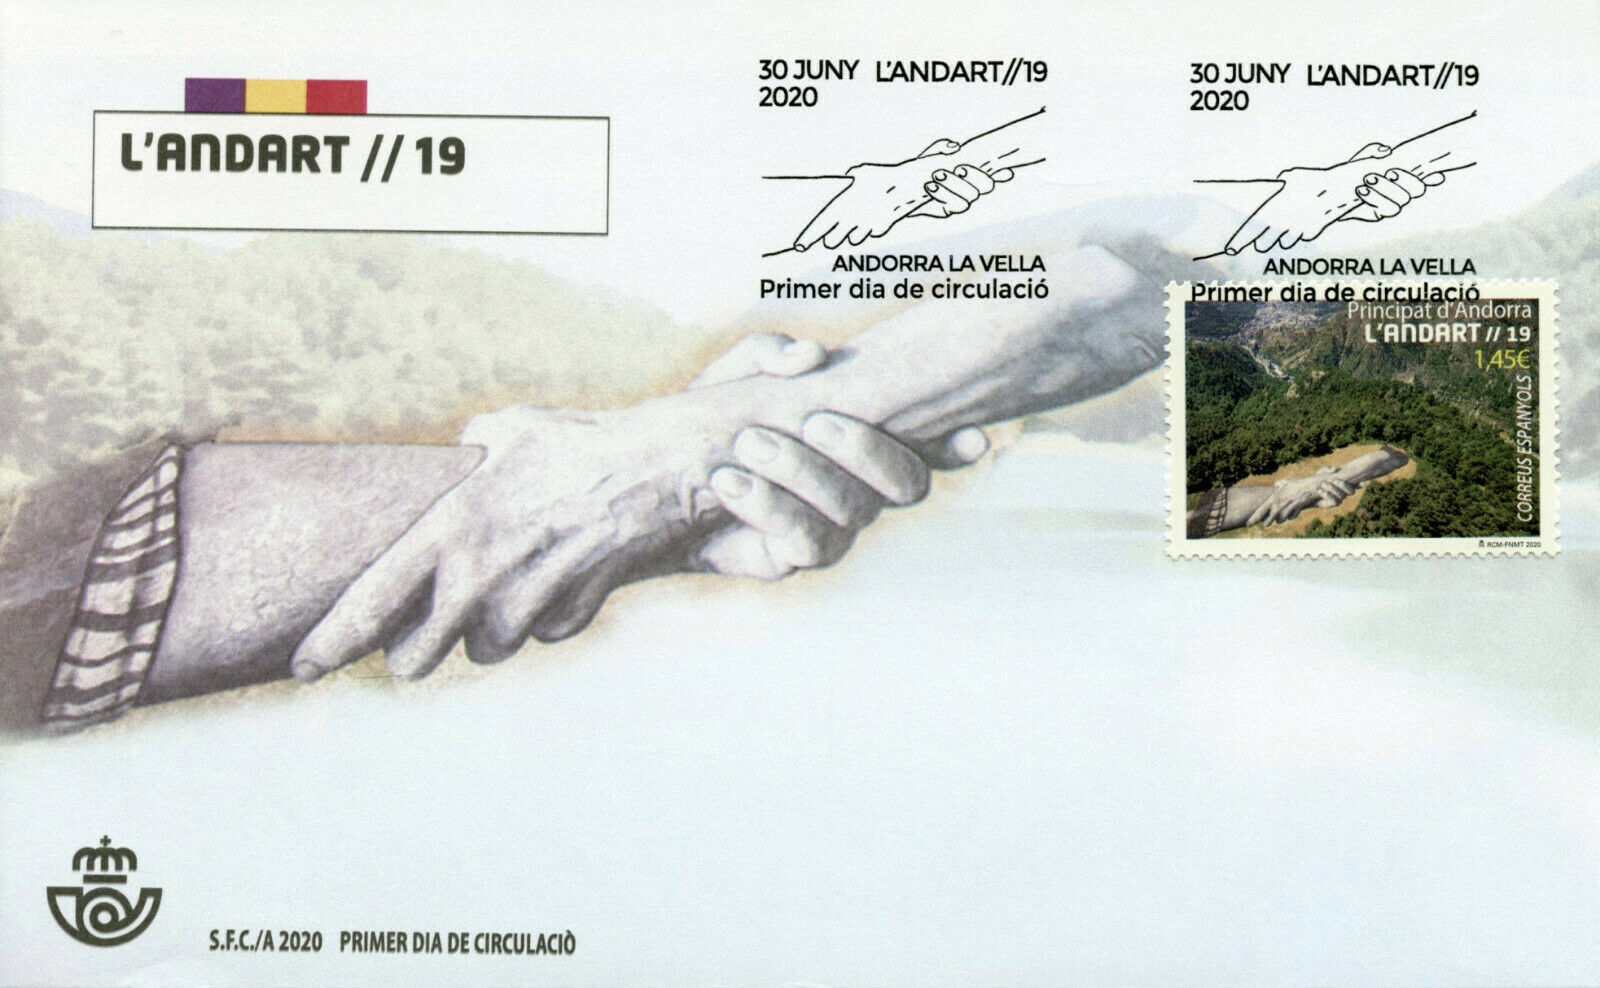 Spanish Andorra Landscapes Stamps 2020 FDC Land Art L'Andart Nature 1v Set